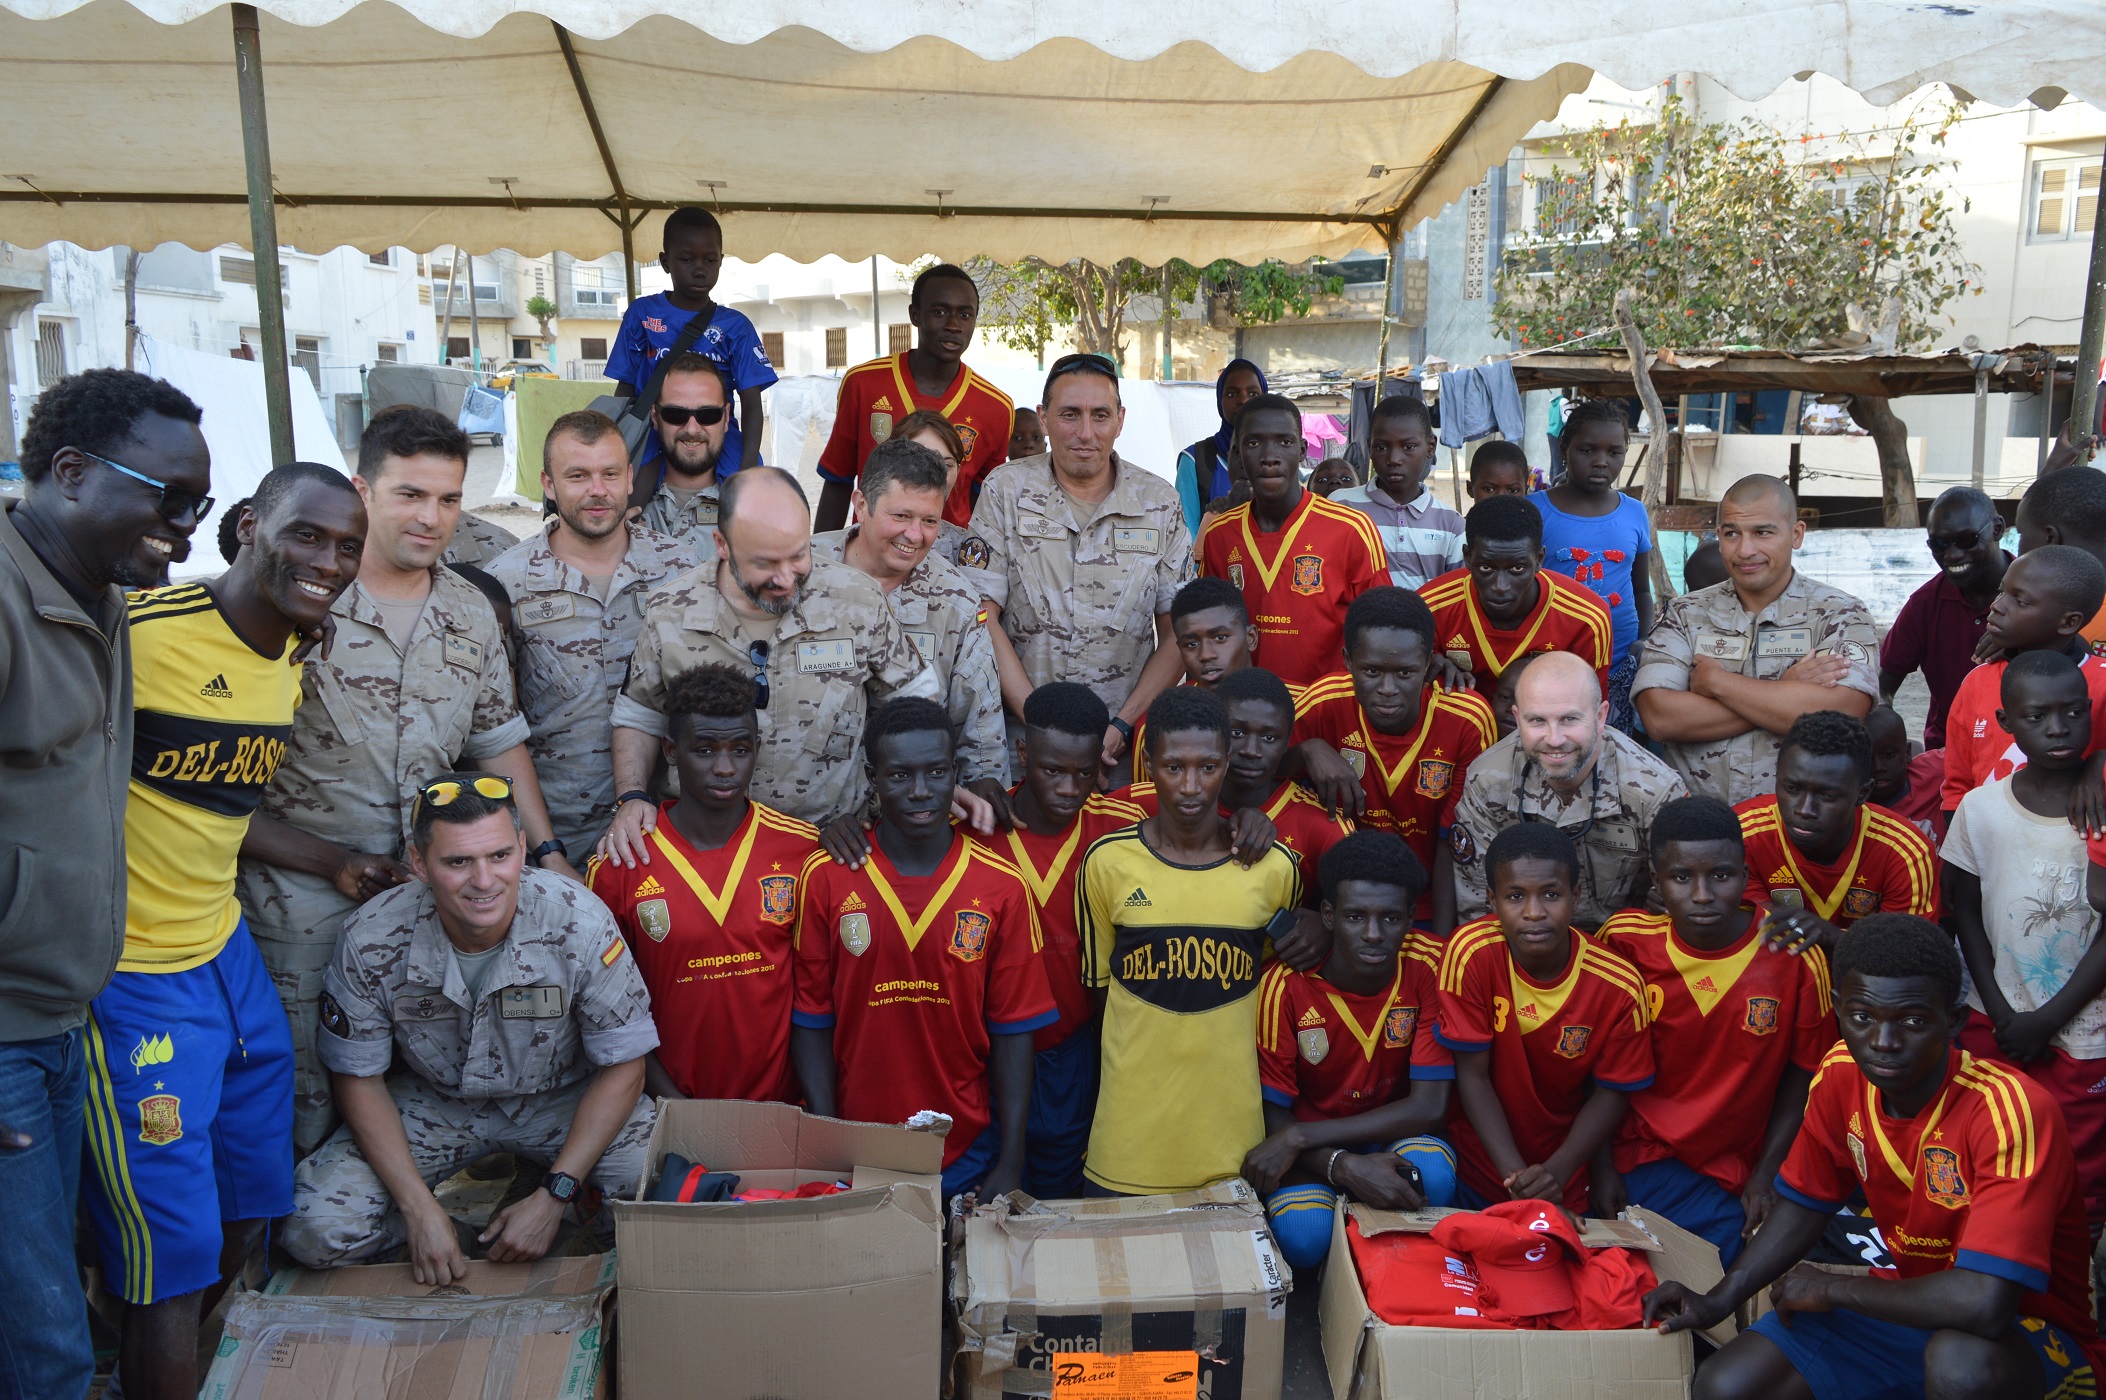 El destacamento “Marfil”, en apoyo al deporte como receta para la esperanza juvenil en Senegal